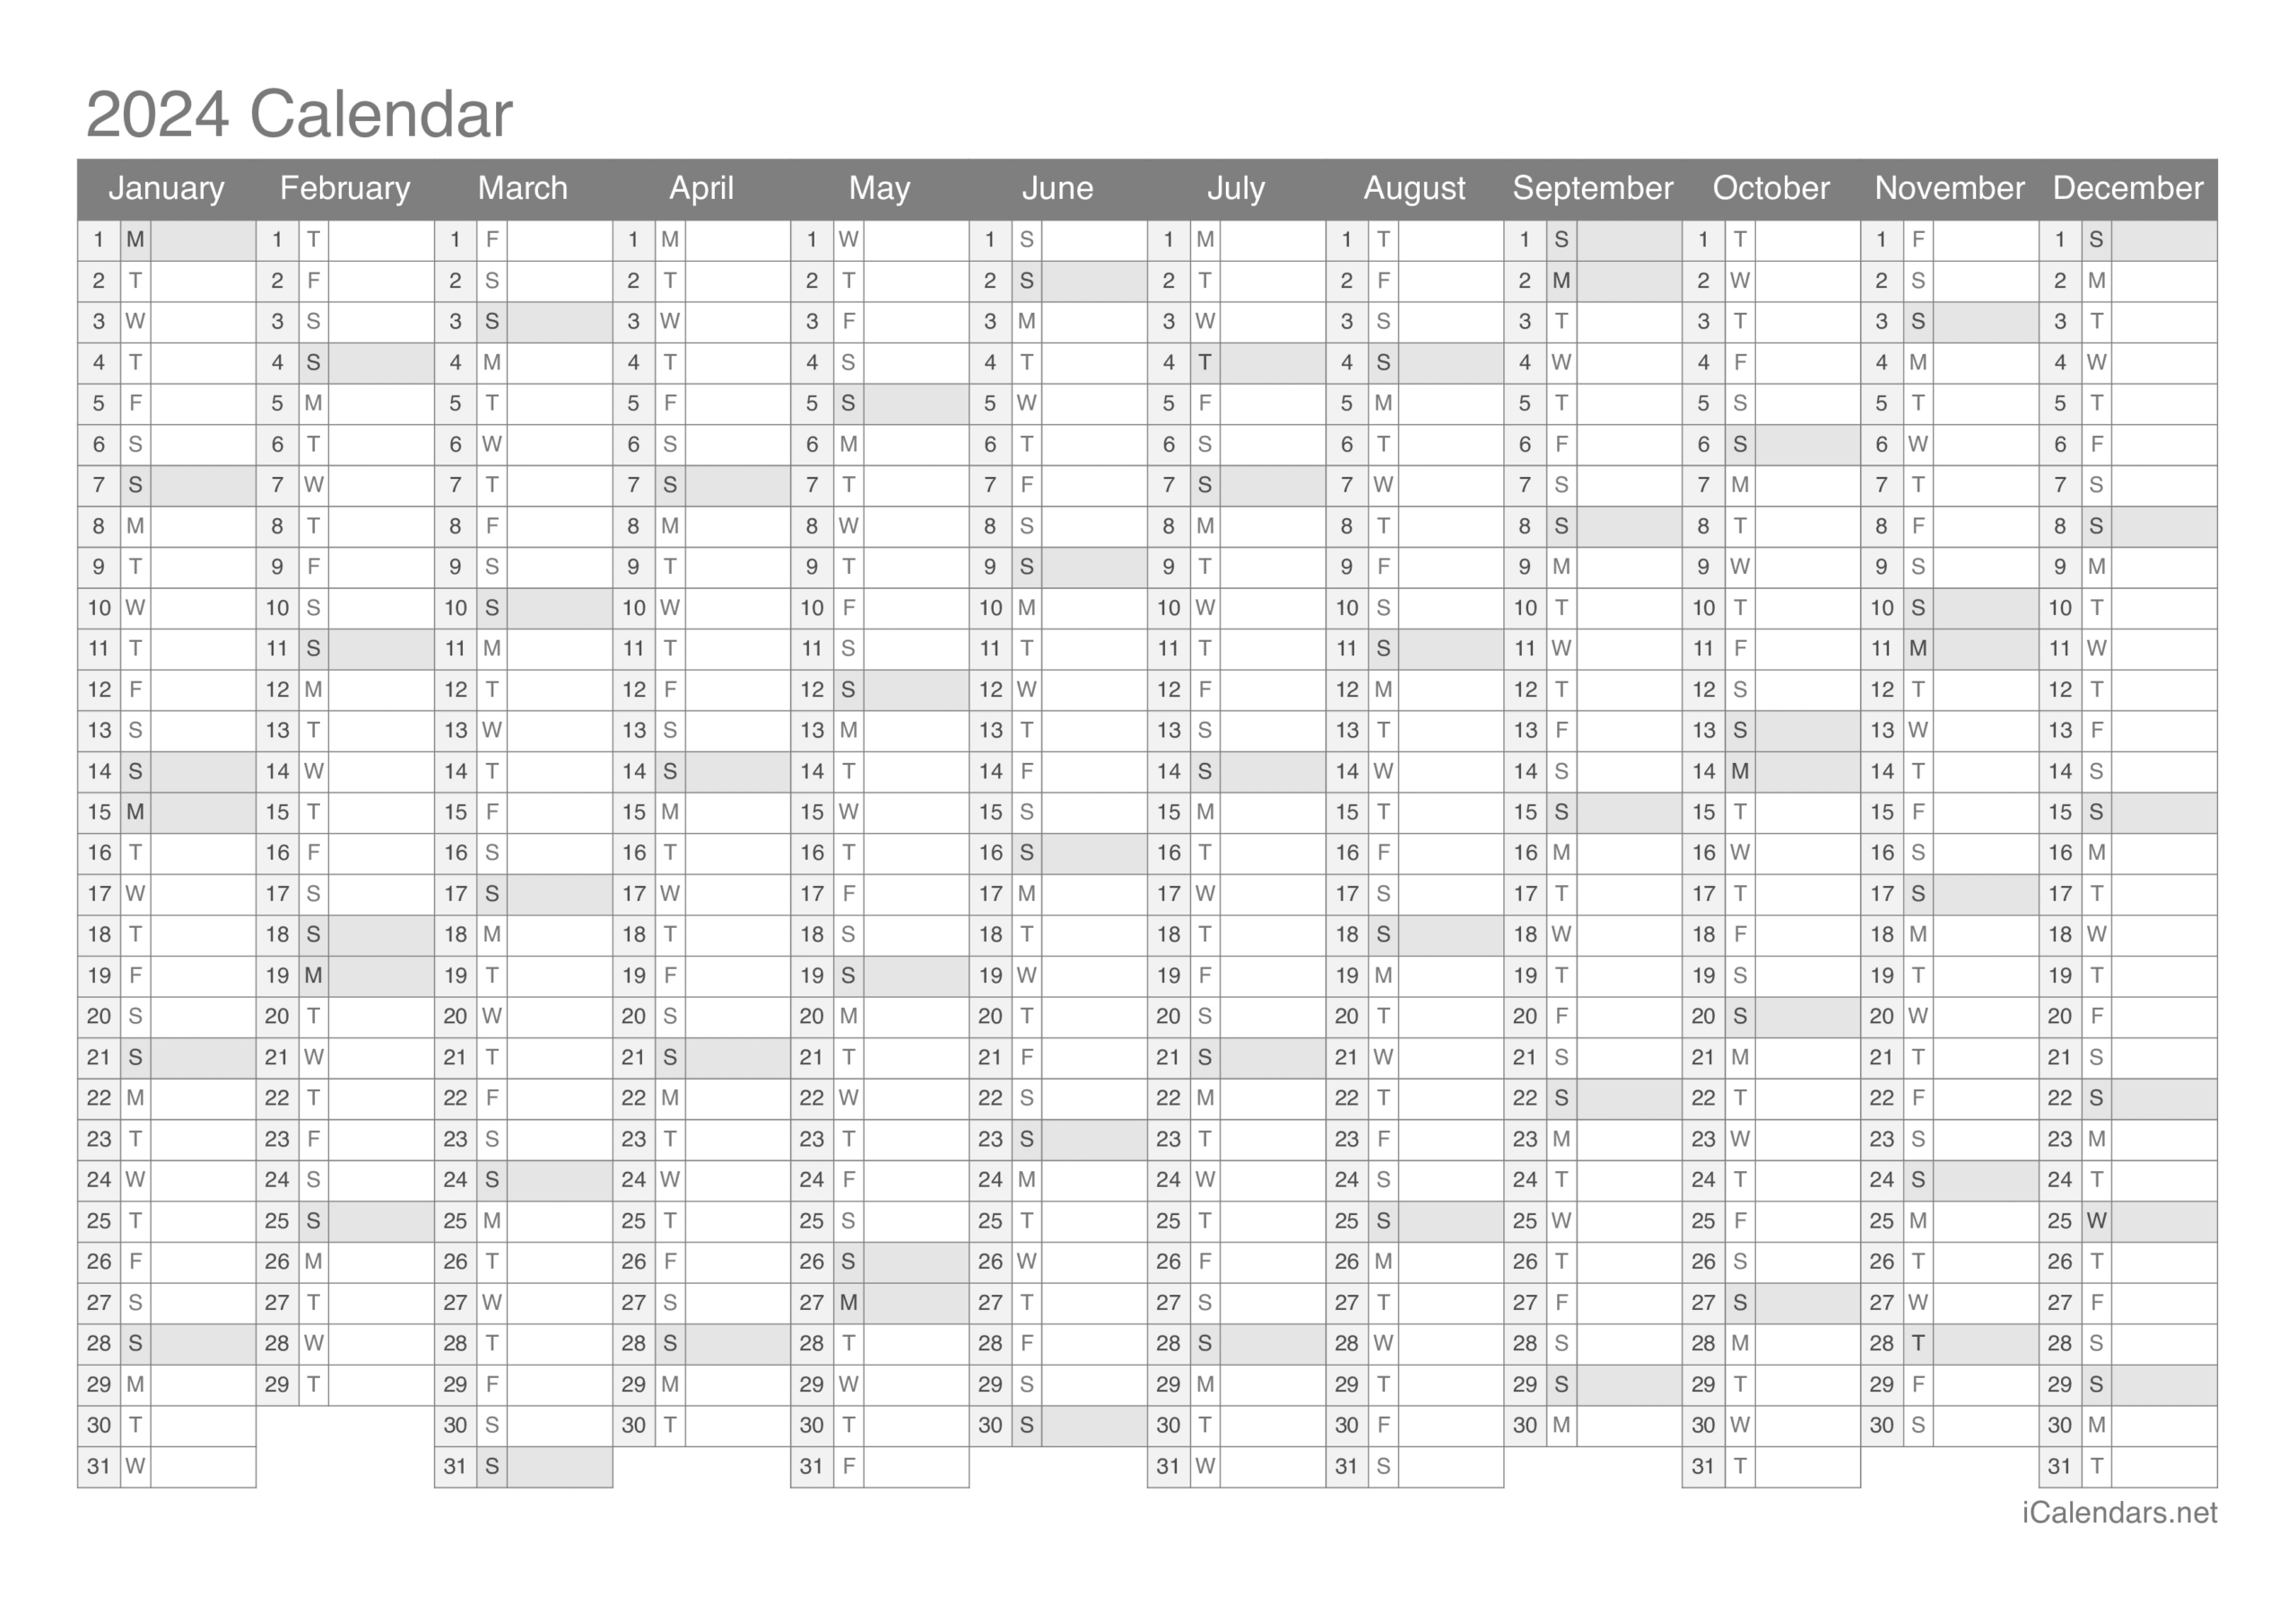 2024 Calendar in Excel Printable Calendar 2024 Printable Calendar 2024